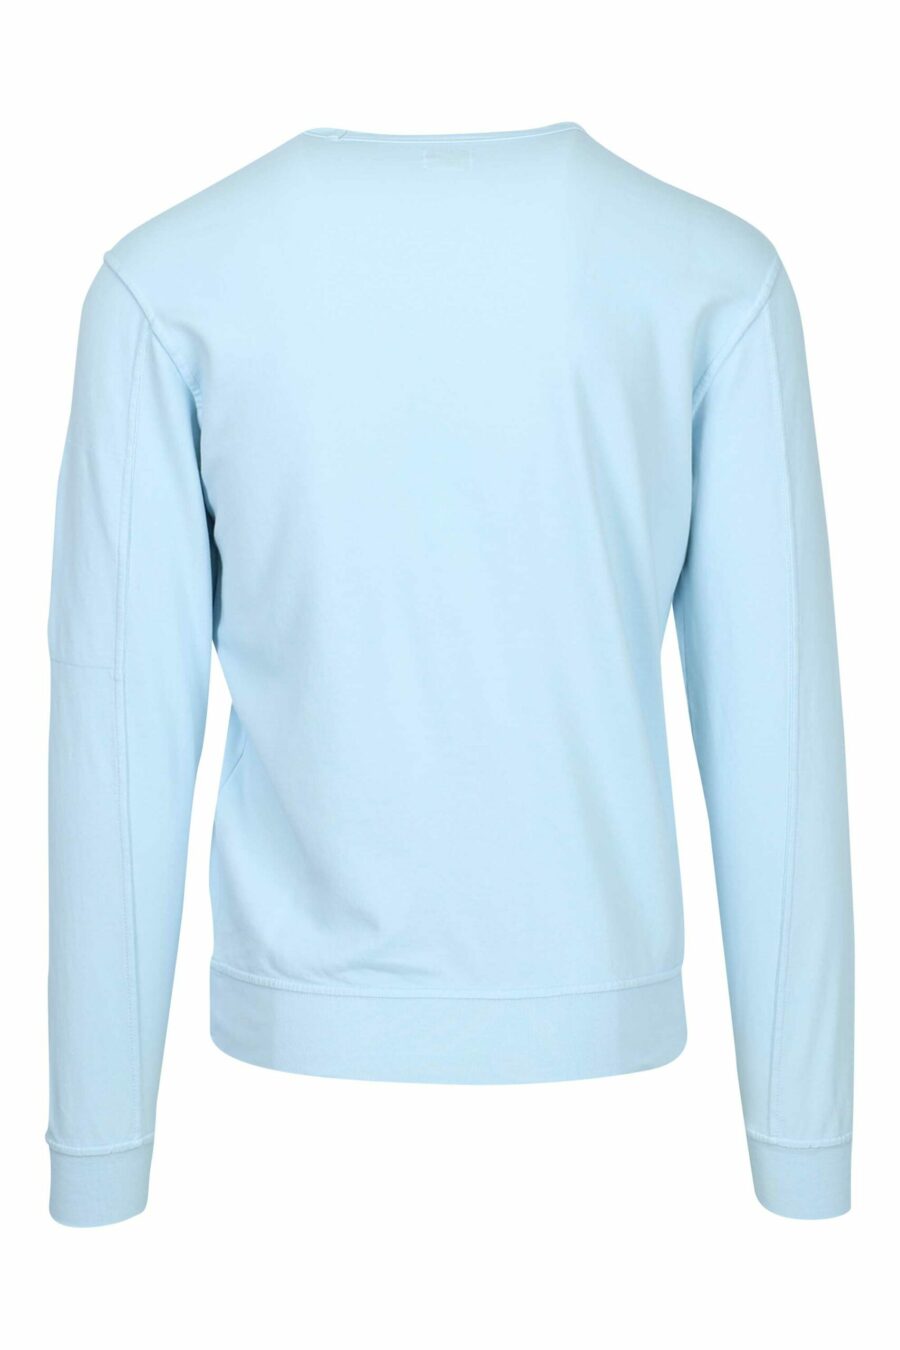 Sweat bleu clair avec poche et lentille mini-logo - 7620943745269 2 scaled